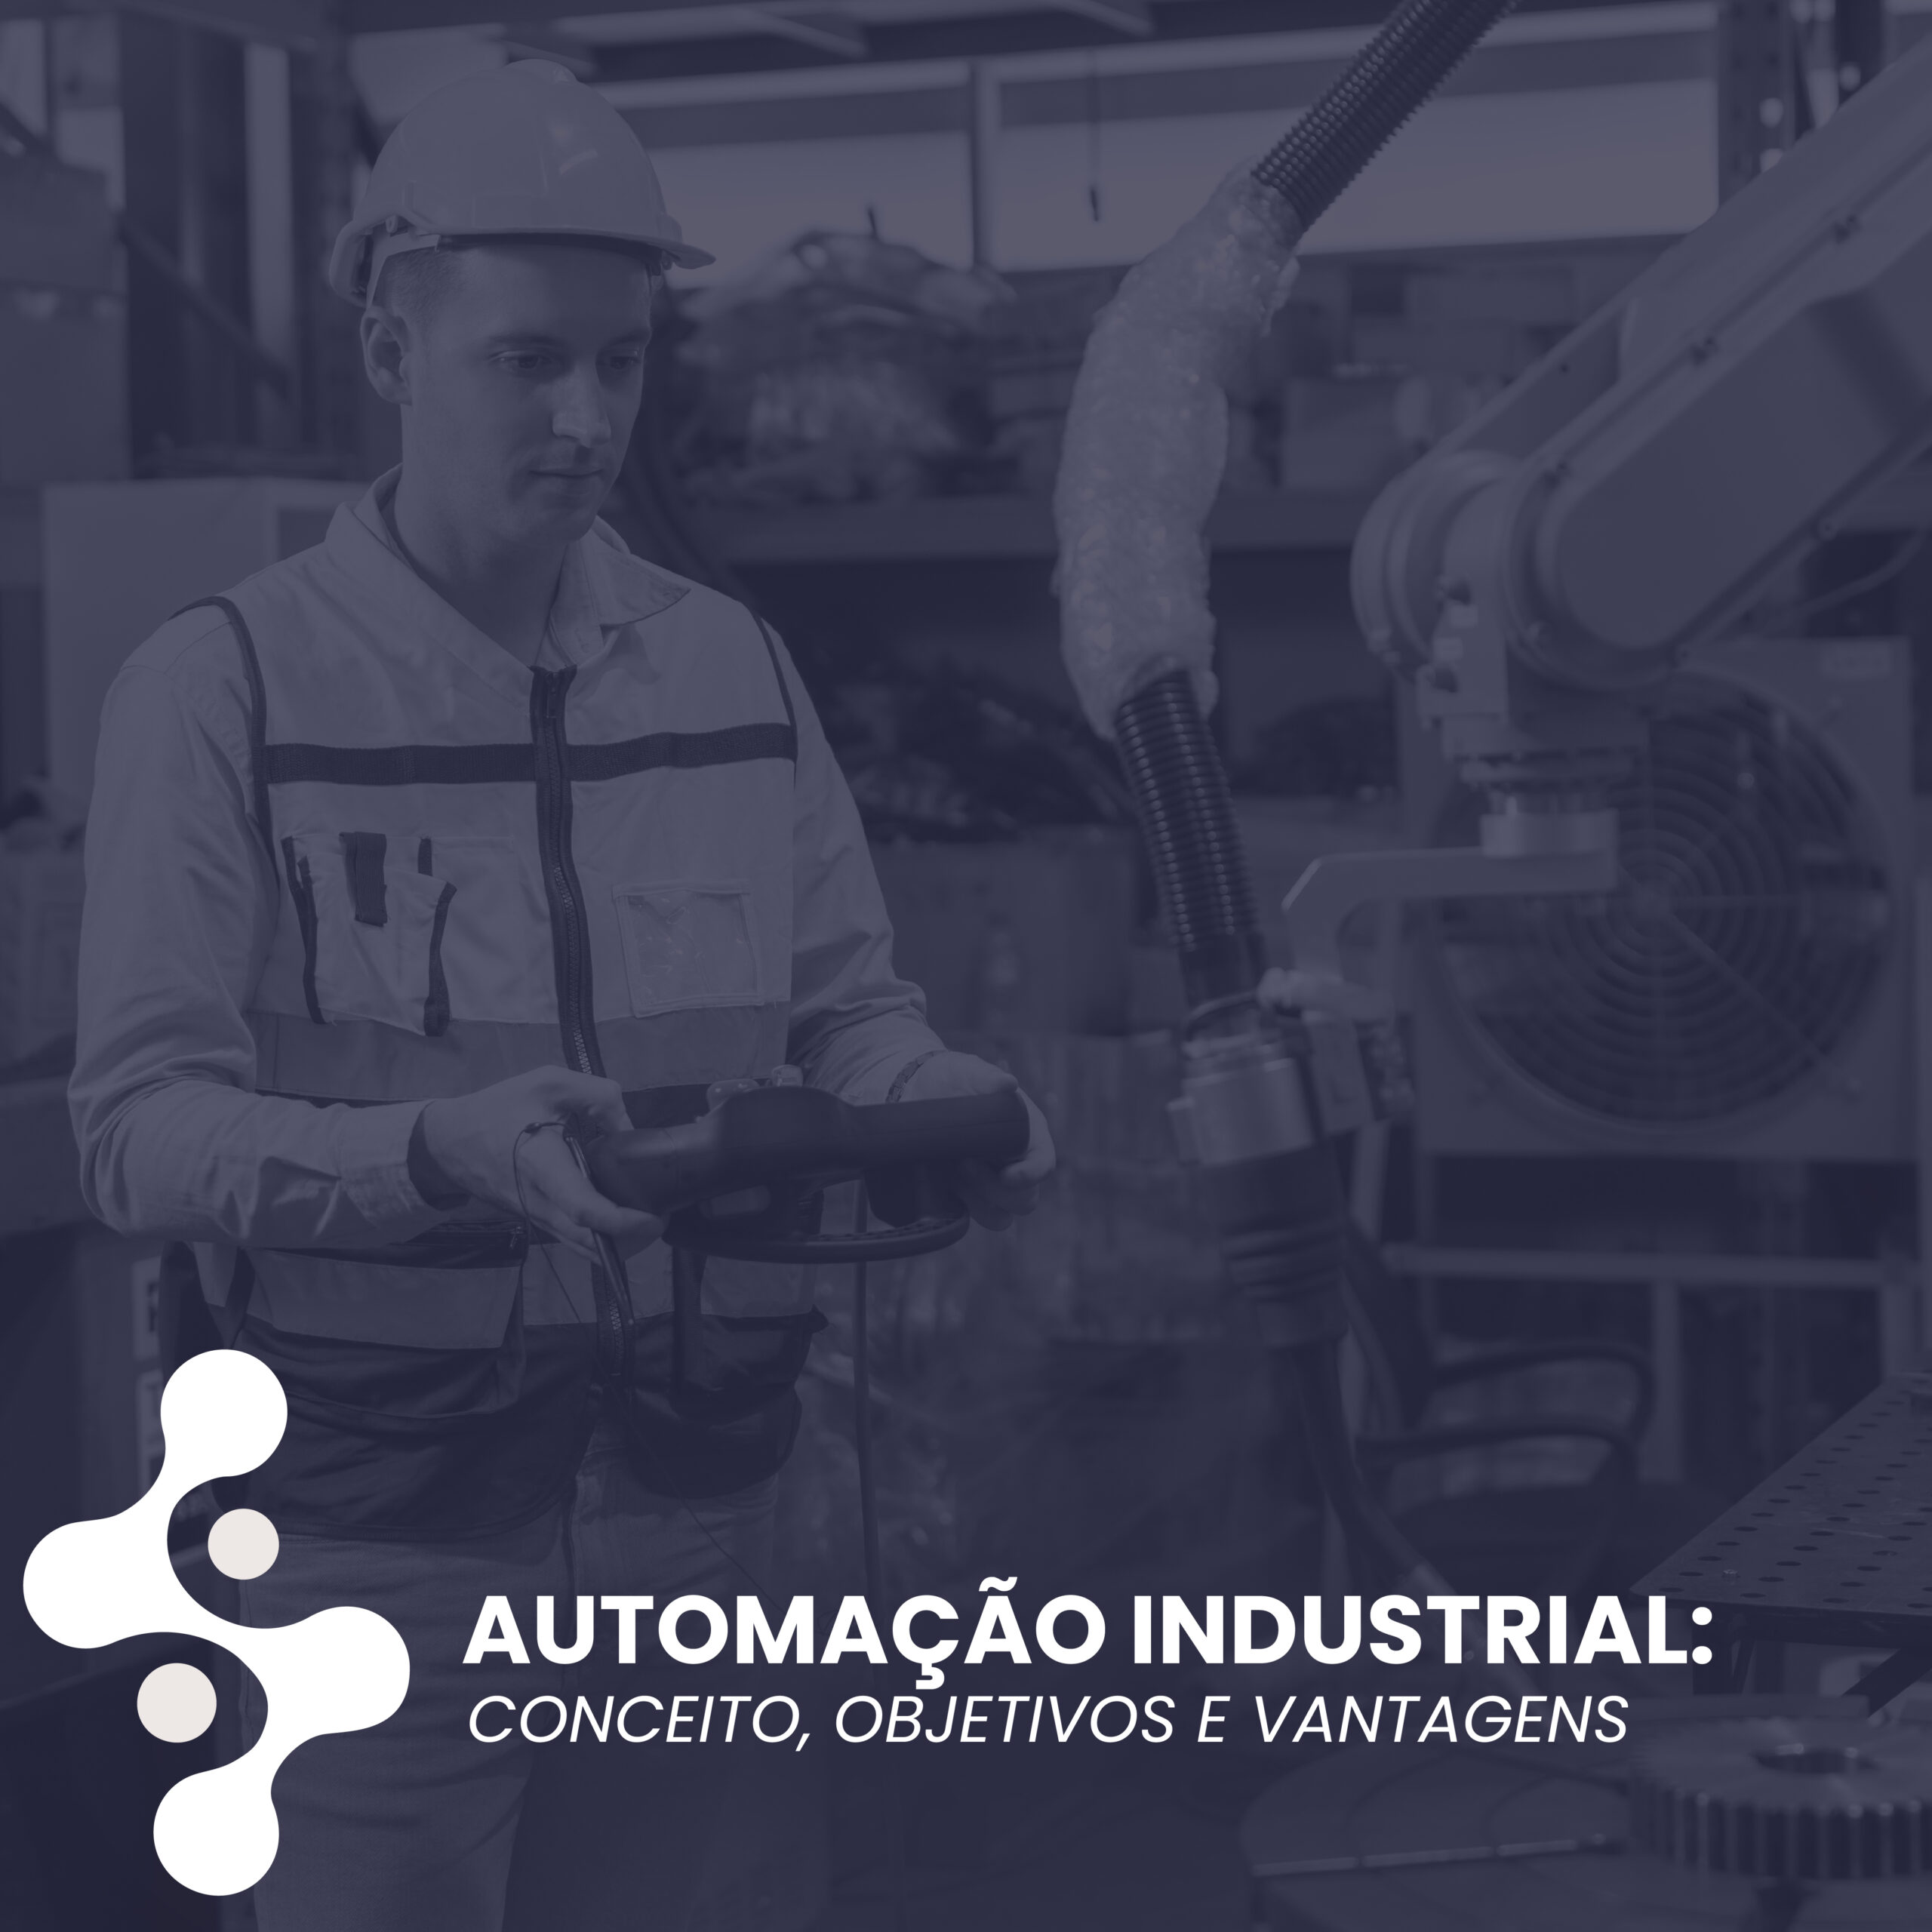 Automação Industrial: Conceito, objetivos e vantagens. 